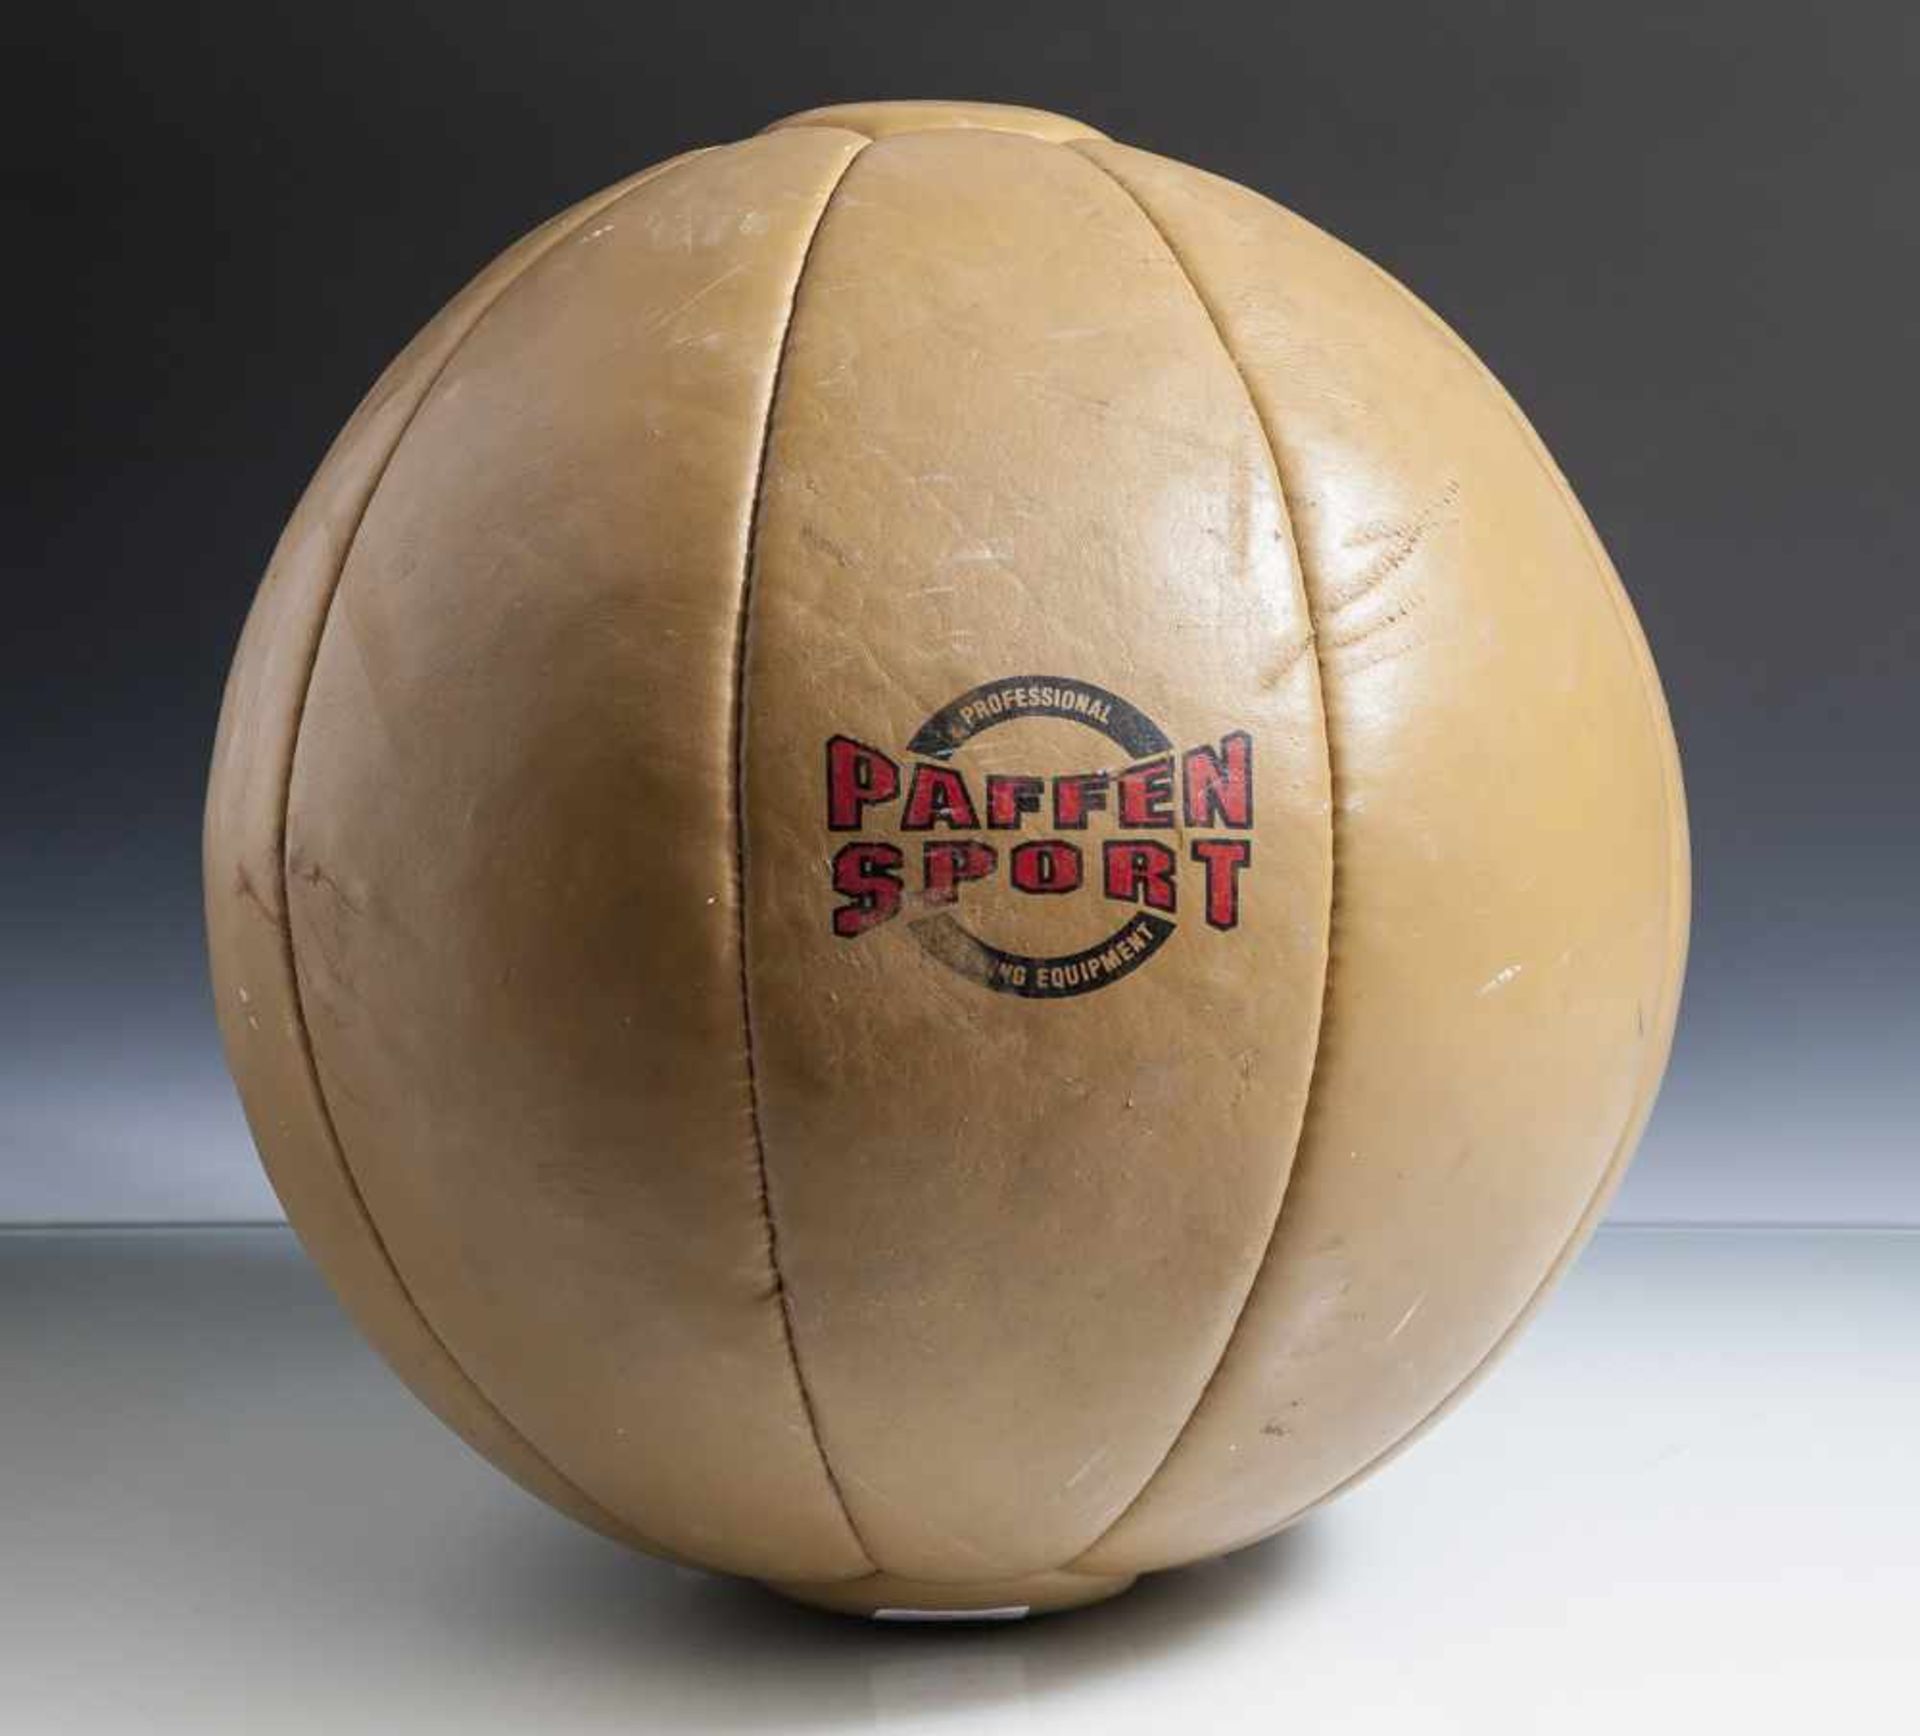 Medizinball aus Leder, wohl 1950/60er Jahre, in roten Lettern bez. "Paffen Sport", 5 kg. Min. ber.